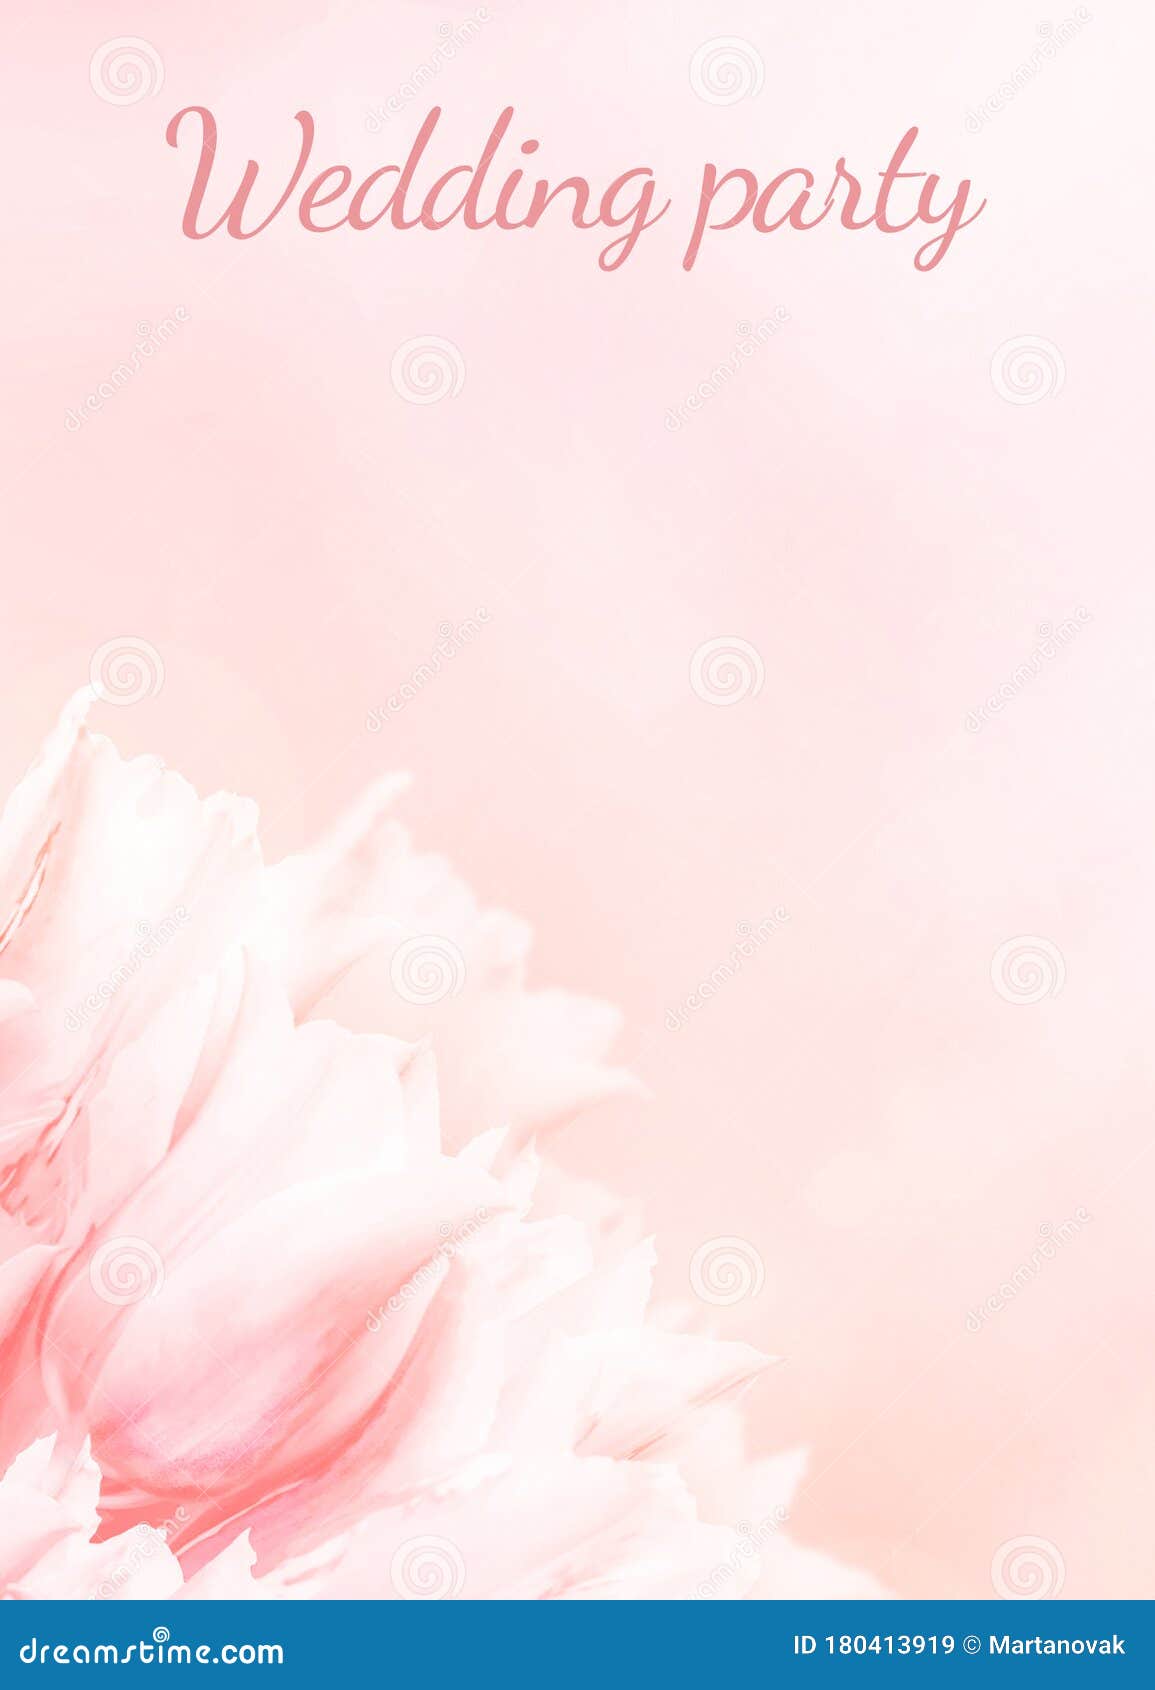 Hoa tulip hồng với kích thước chuẩn sẽ mang lại sự sang trọng và quý phái cho chương trình lễ cưới của bạn. Để tìm hiểu thêm về kinh nghiệm tổ chức lễ cưới với hoa tulip hồng, bạn có thể tham khảo chương trình lễ cưới của chúng tôi. Hãy cùng chúng tôi tạo nên một ngày cưới đáng nhớ và hoàn hảo nhất!